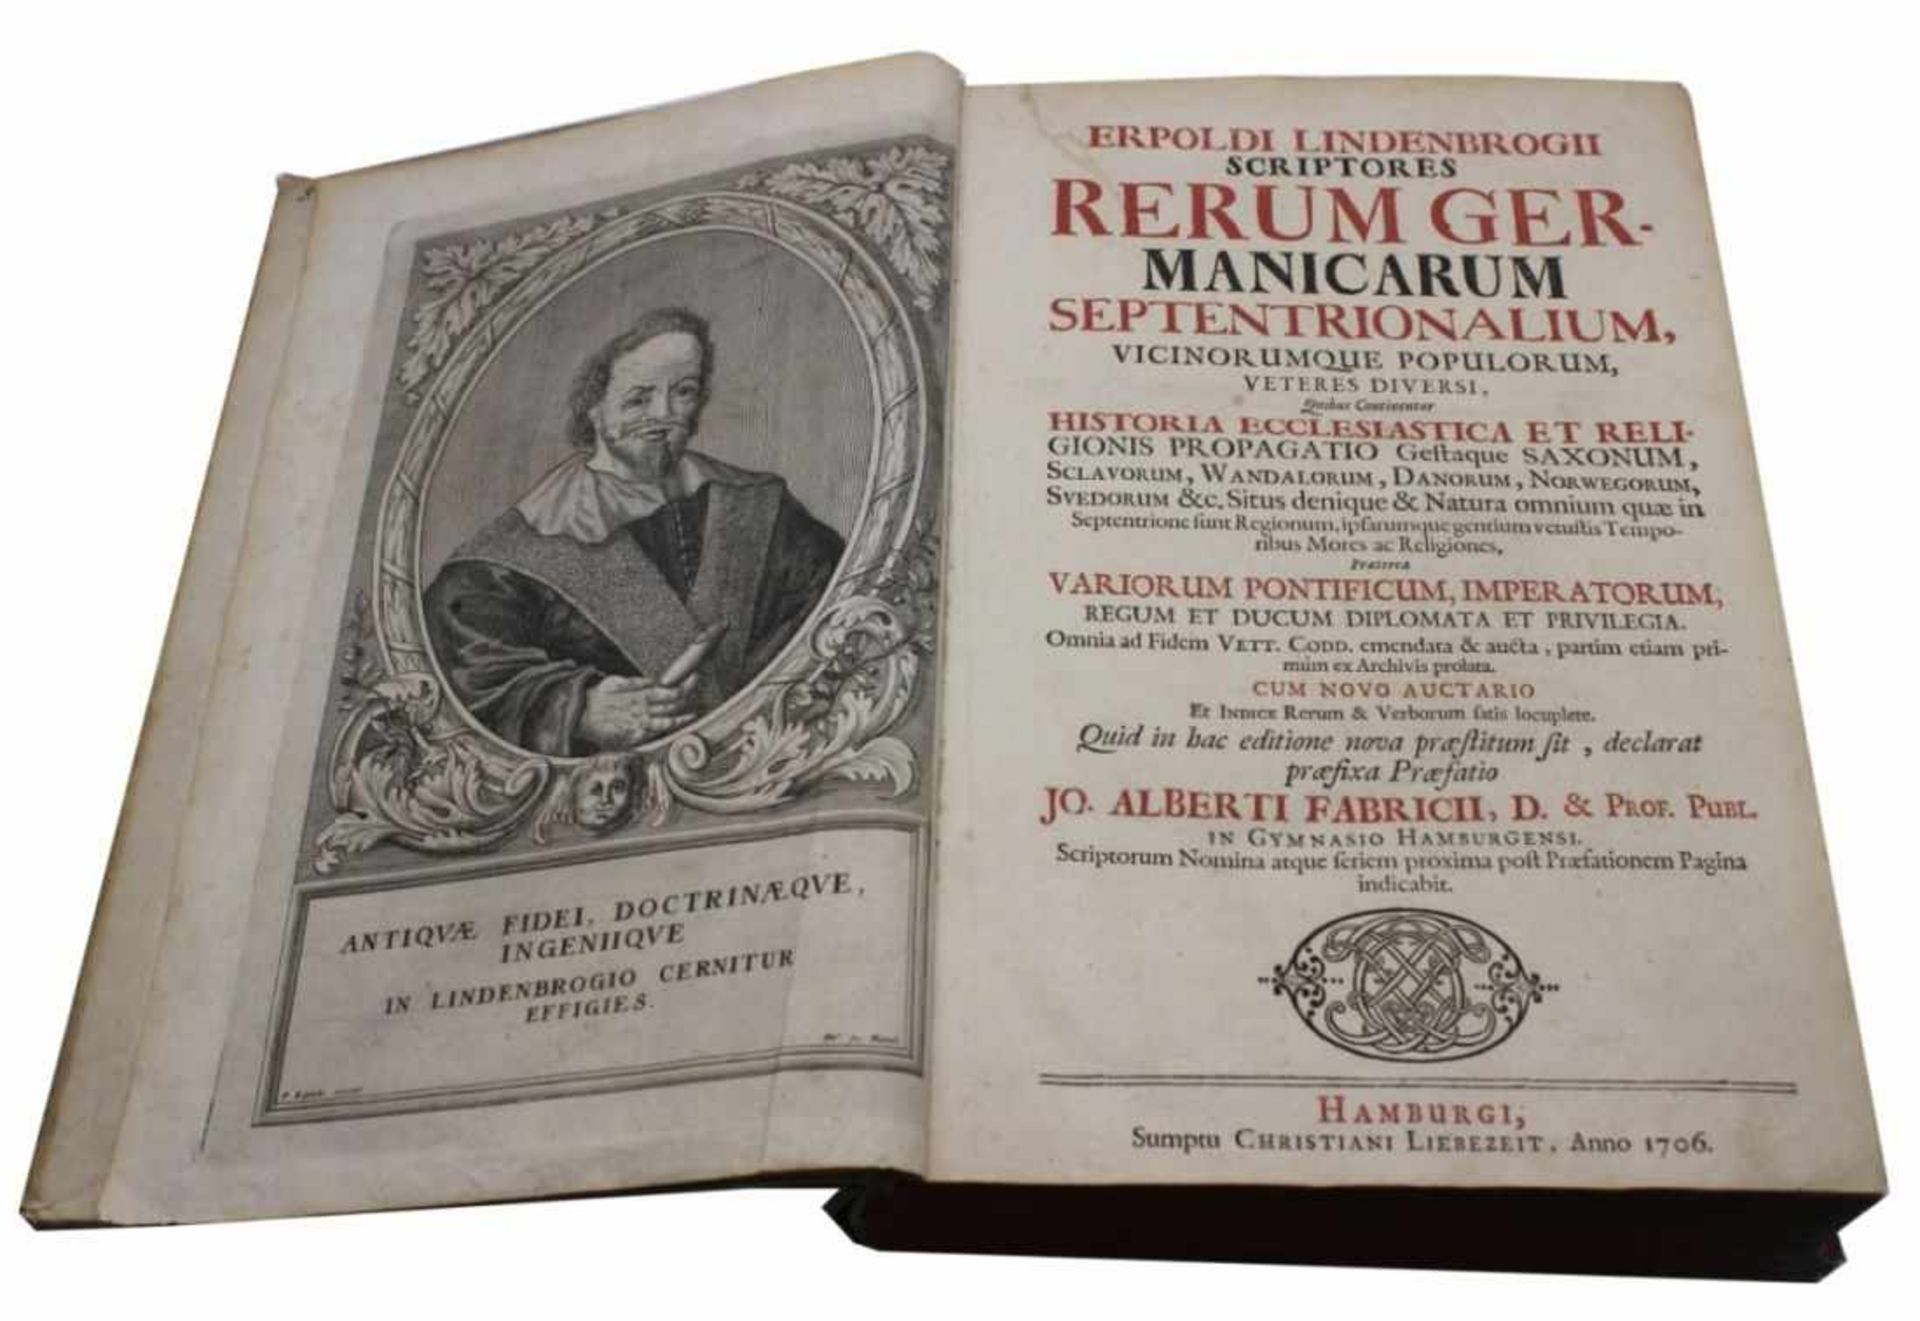 Buch - Erpold Lindenbrog (1540 Bremen - 1616 Hamburg) "Erpoldi Lindenbrogii scriptores rerum